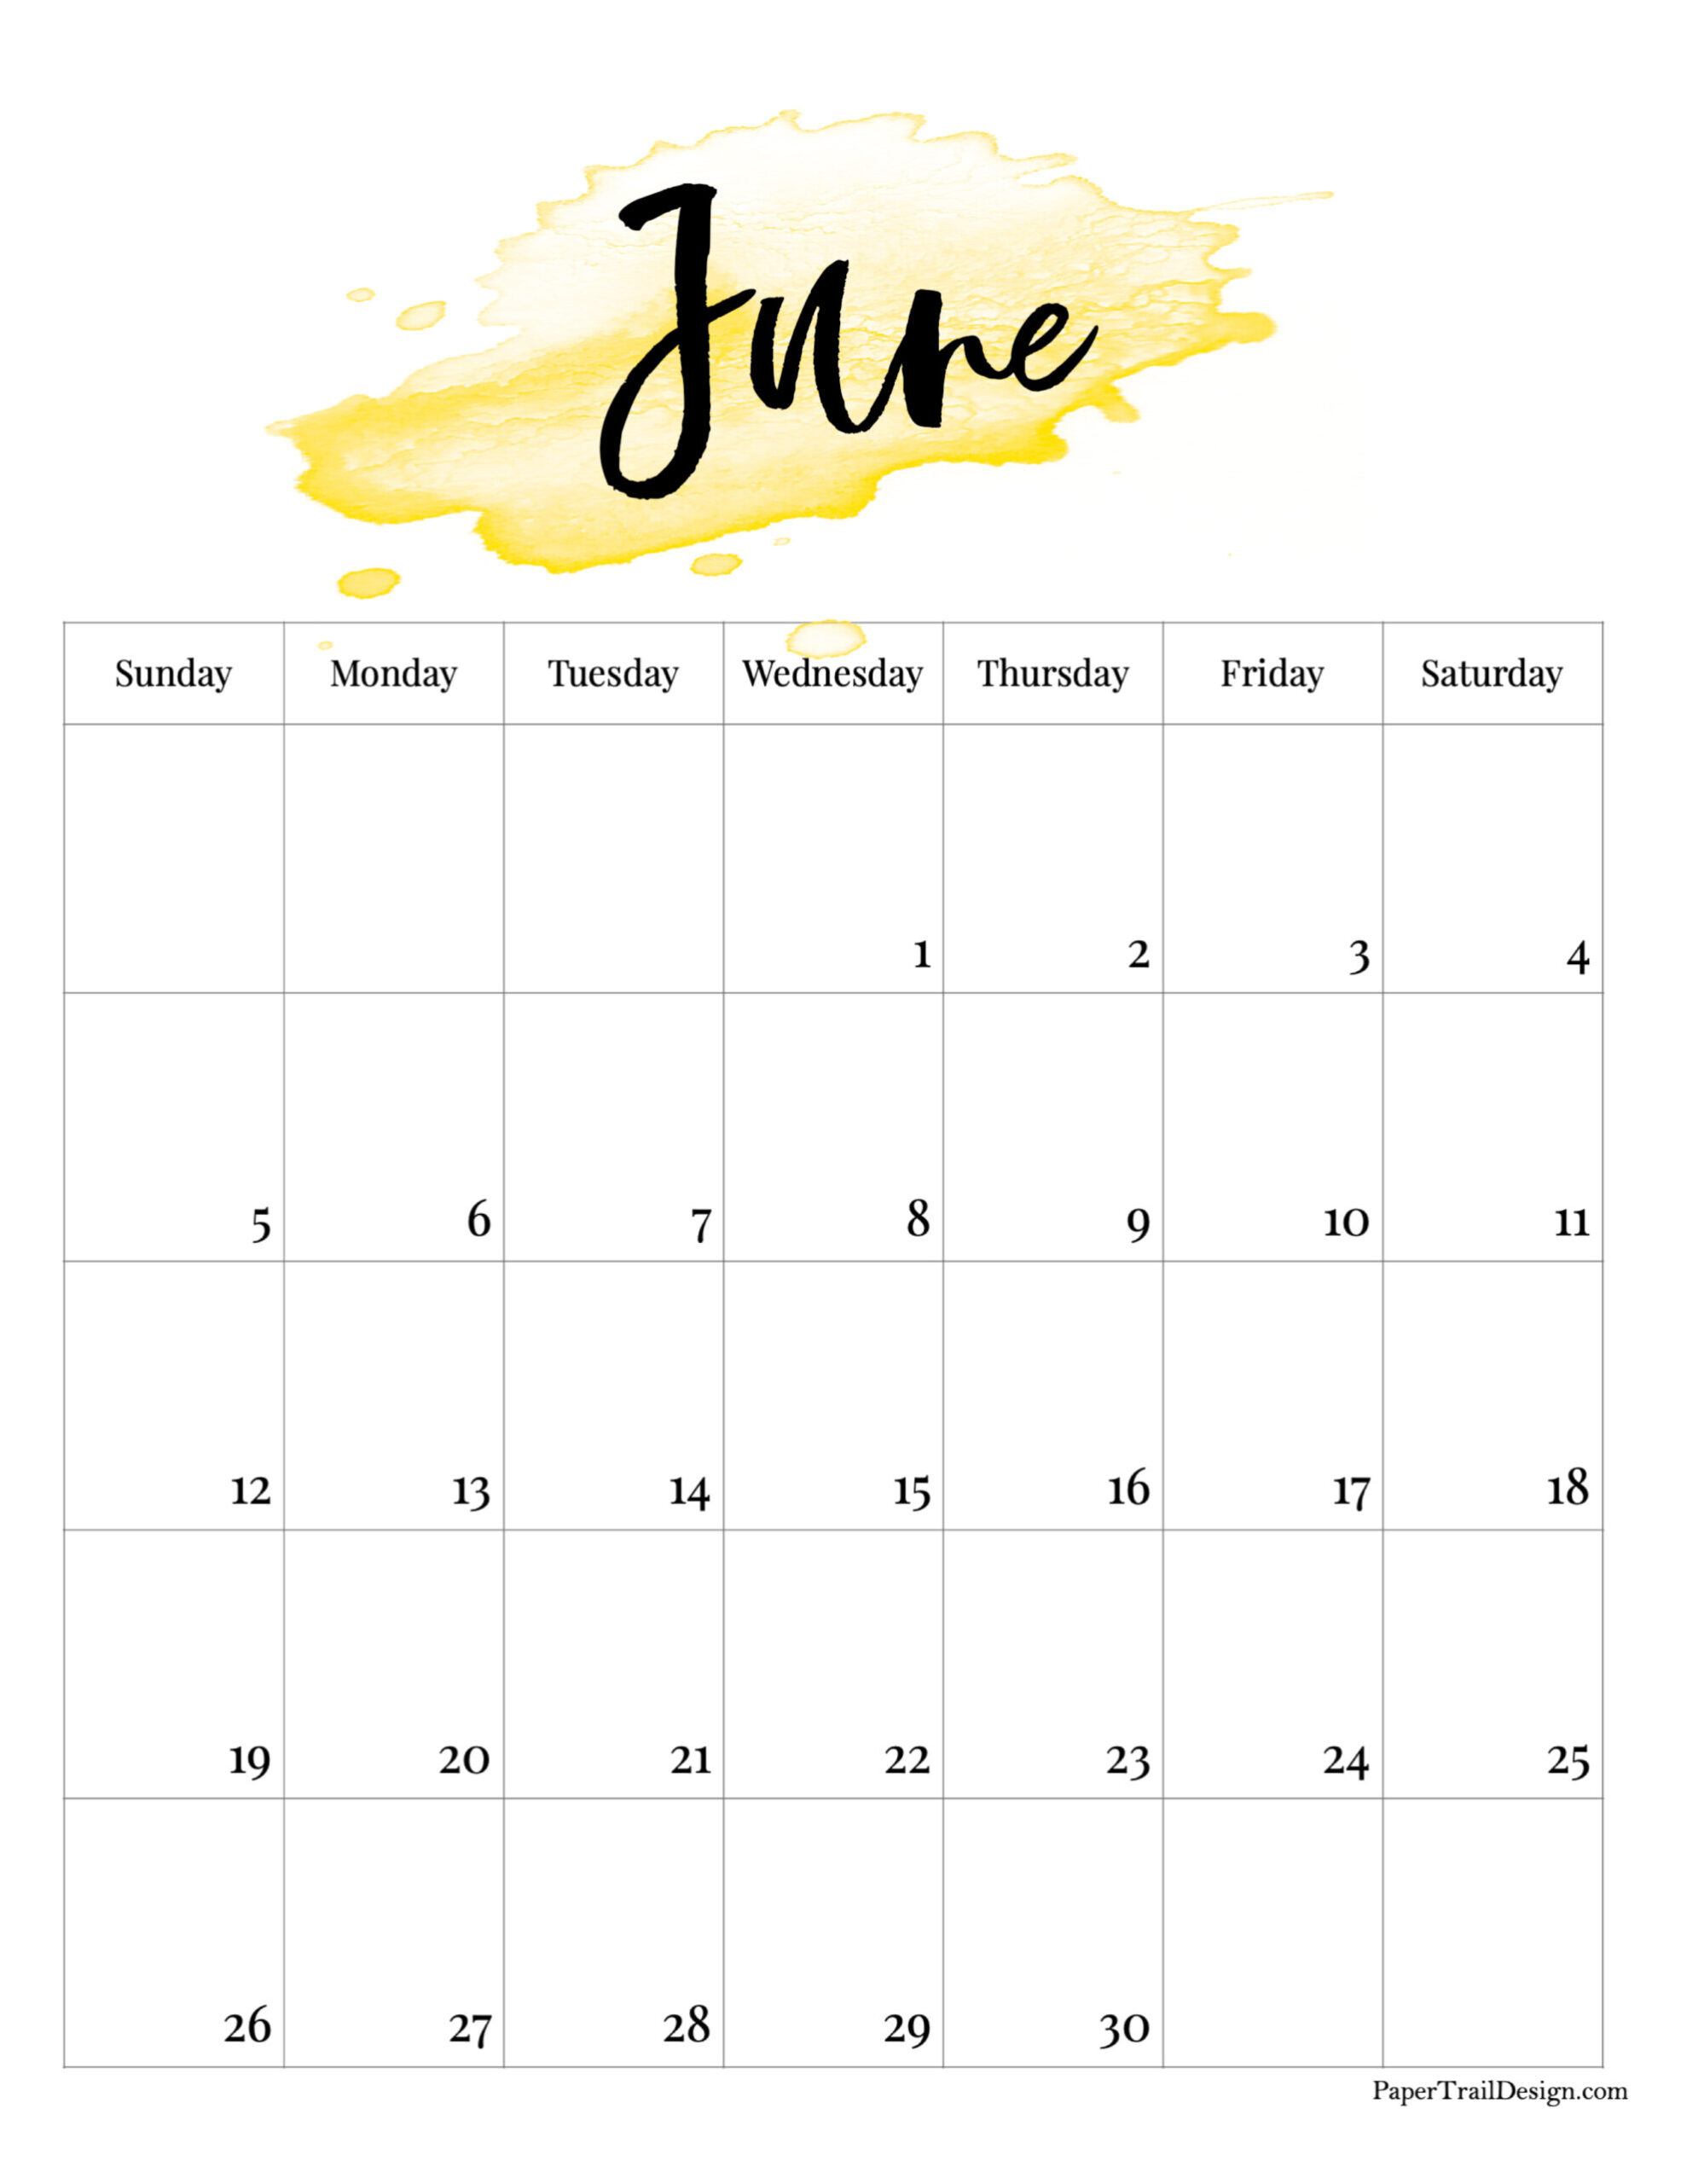 Take Calendar June 2022 Printable